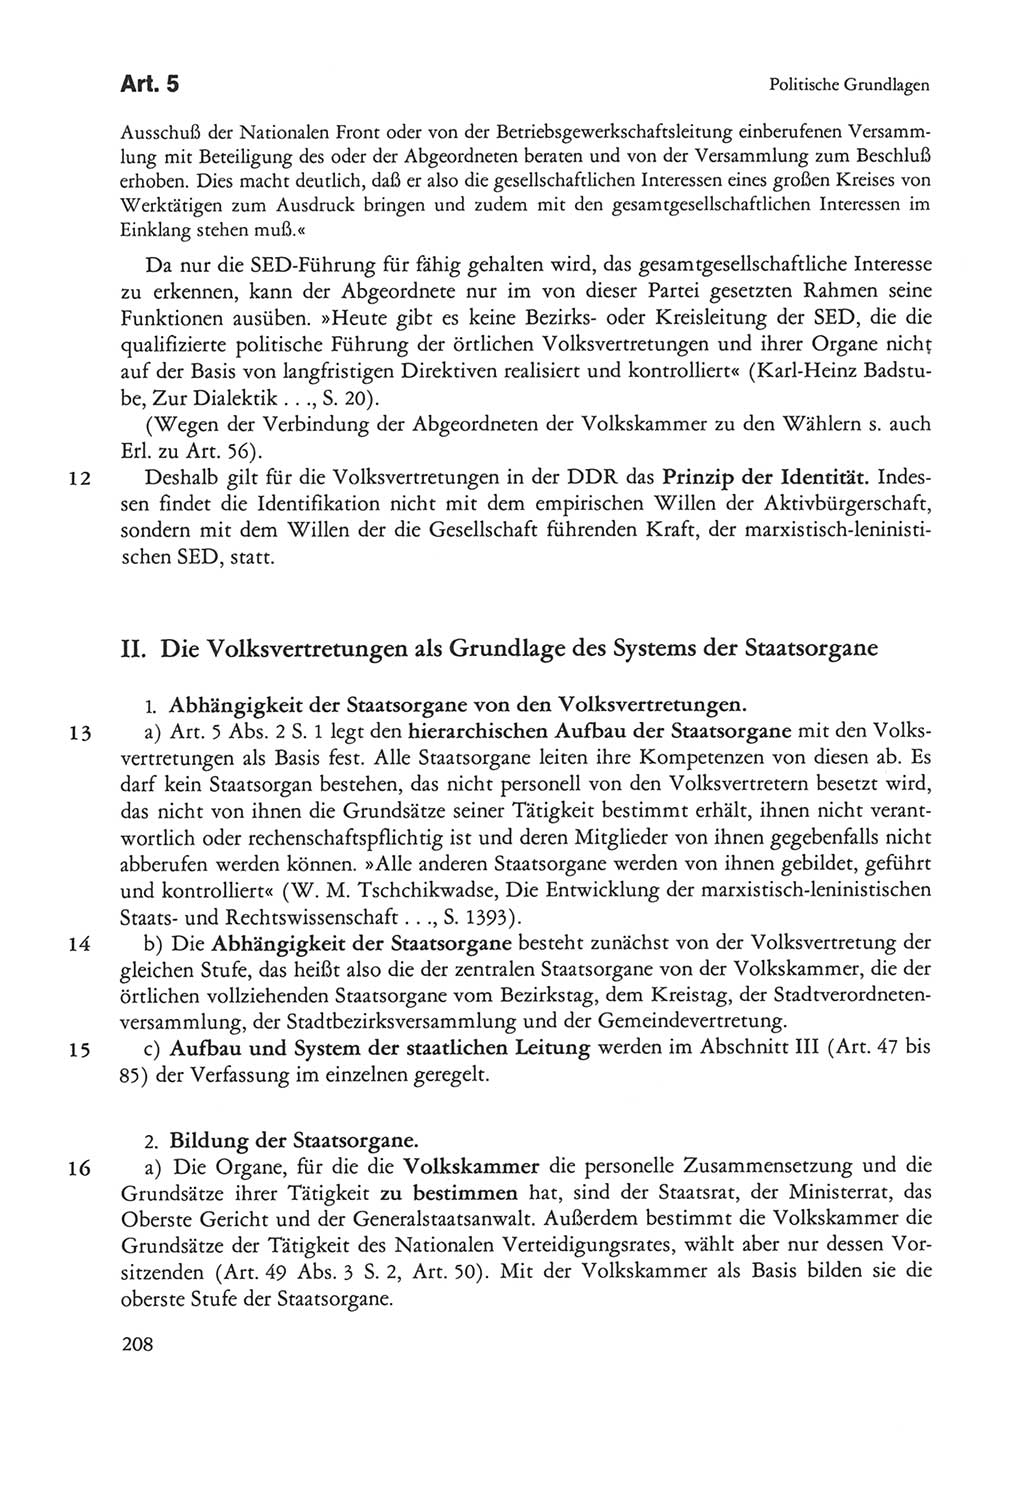 Die sozialistische Verfassung der Deutschen Demokratischen Republik (DDR), Kommentar mit einem Nachtrag 1997, Seite 208 (Soz. Verf. DDR Komm. Nachtr. 1997, S. 208)